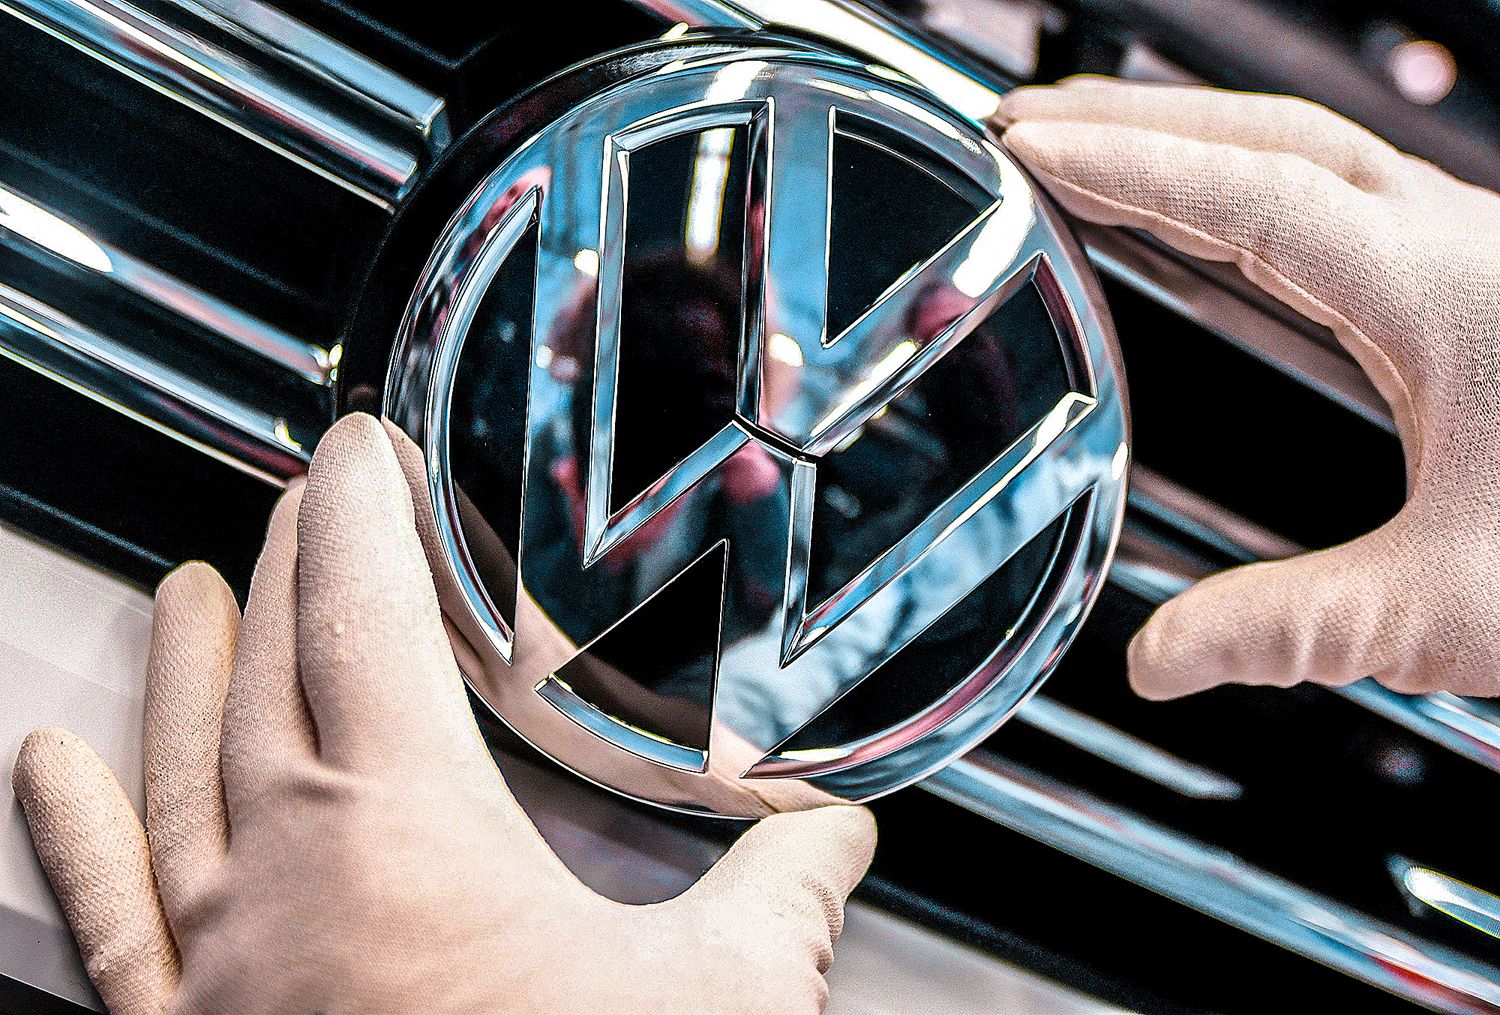 Белебевский завод «Автонормаль» начал сотрудничество с Volkswagen